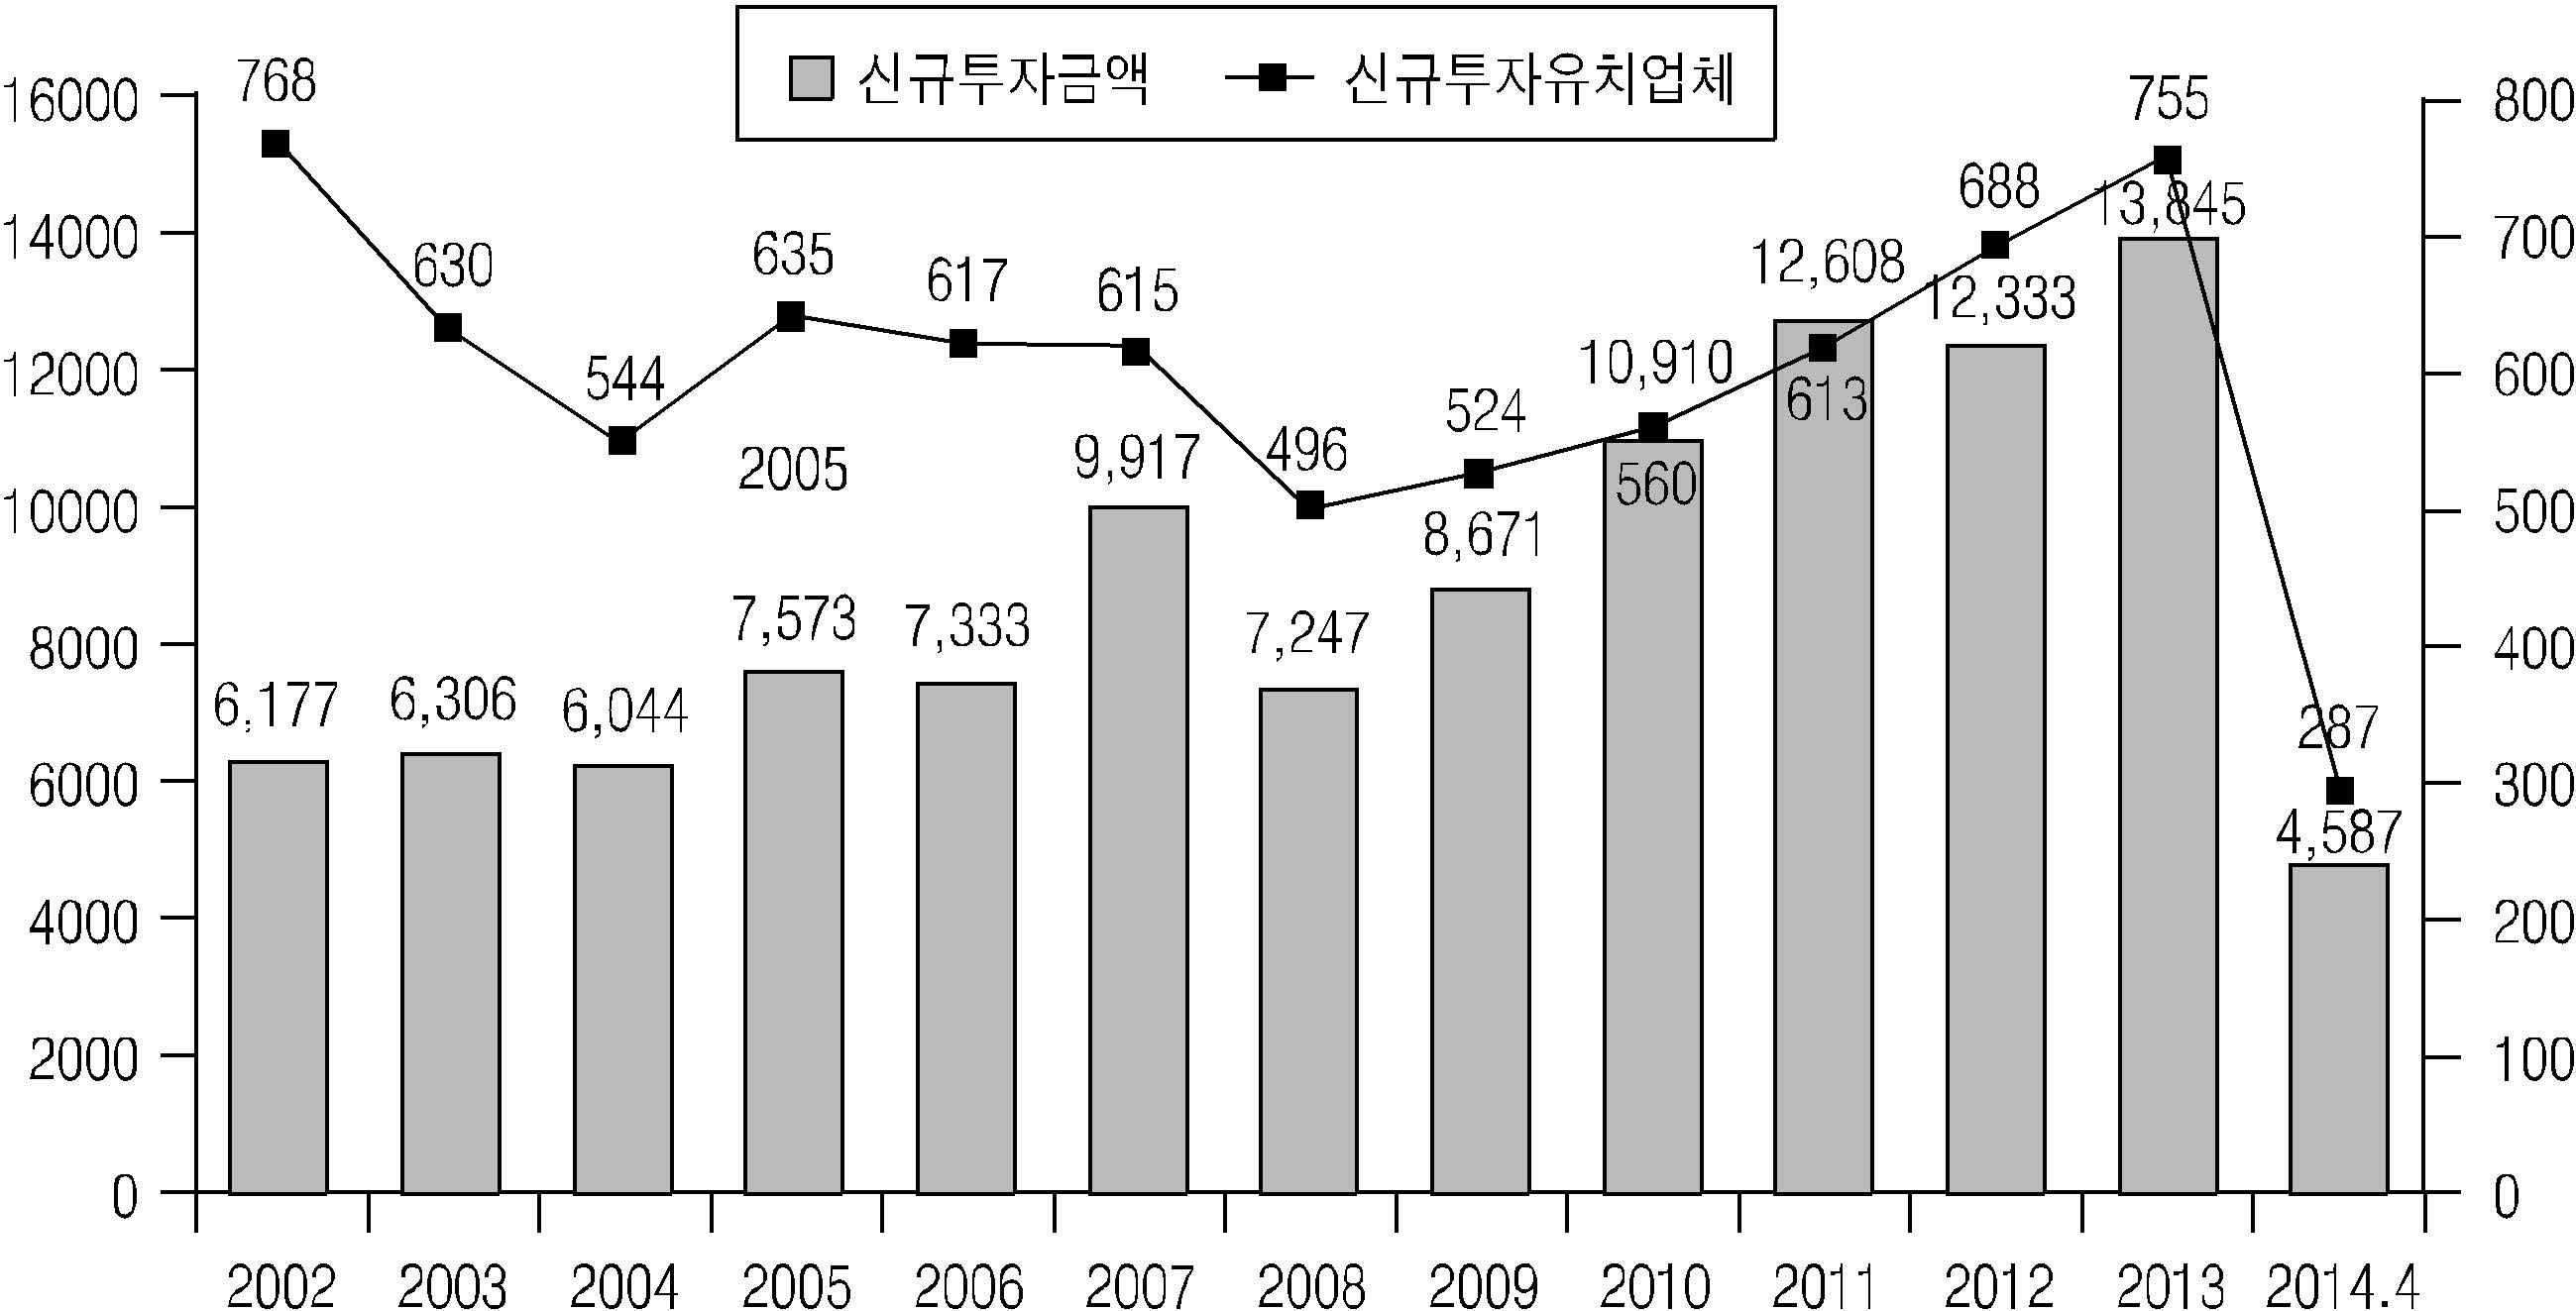 [그림 2－3] 벤처캐피털 신규투자금액 및 투자업체 수 추이